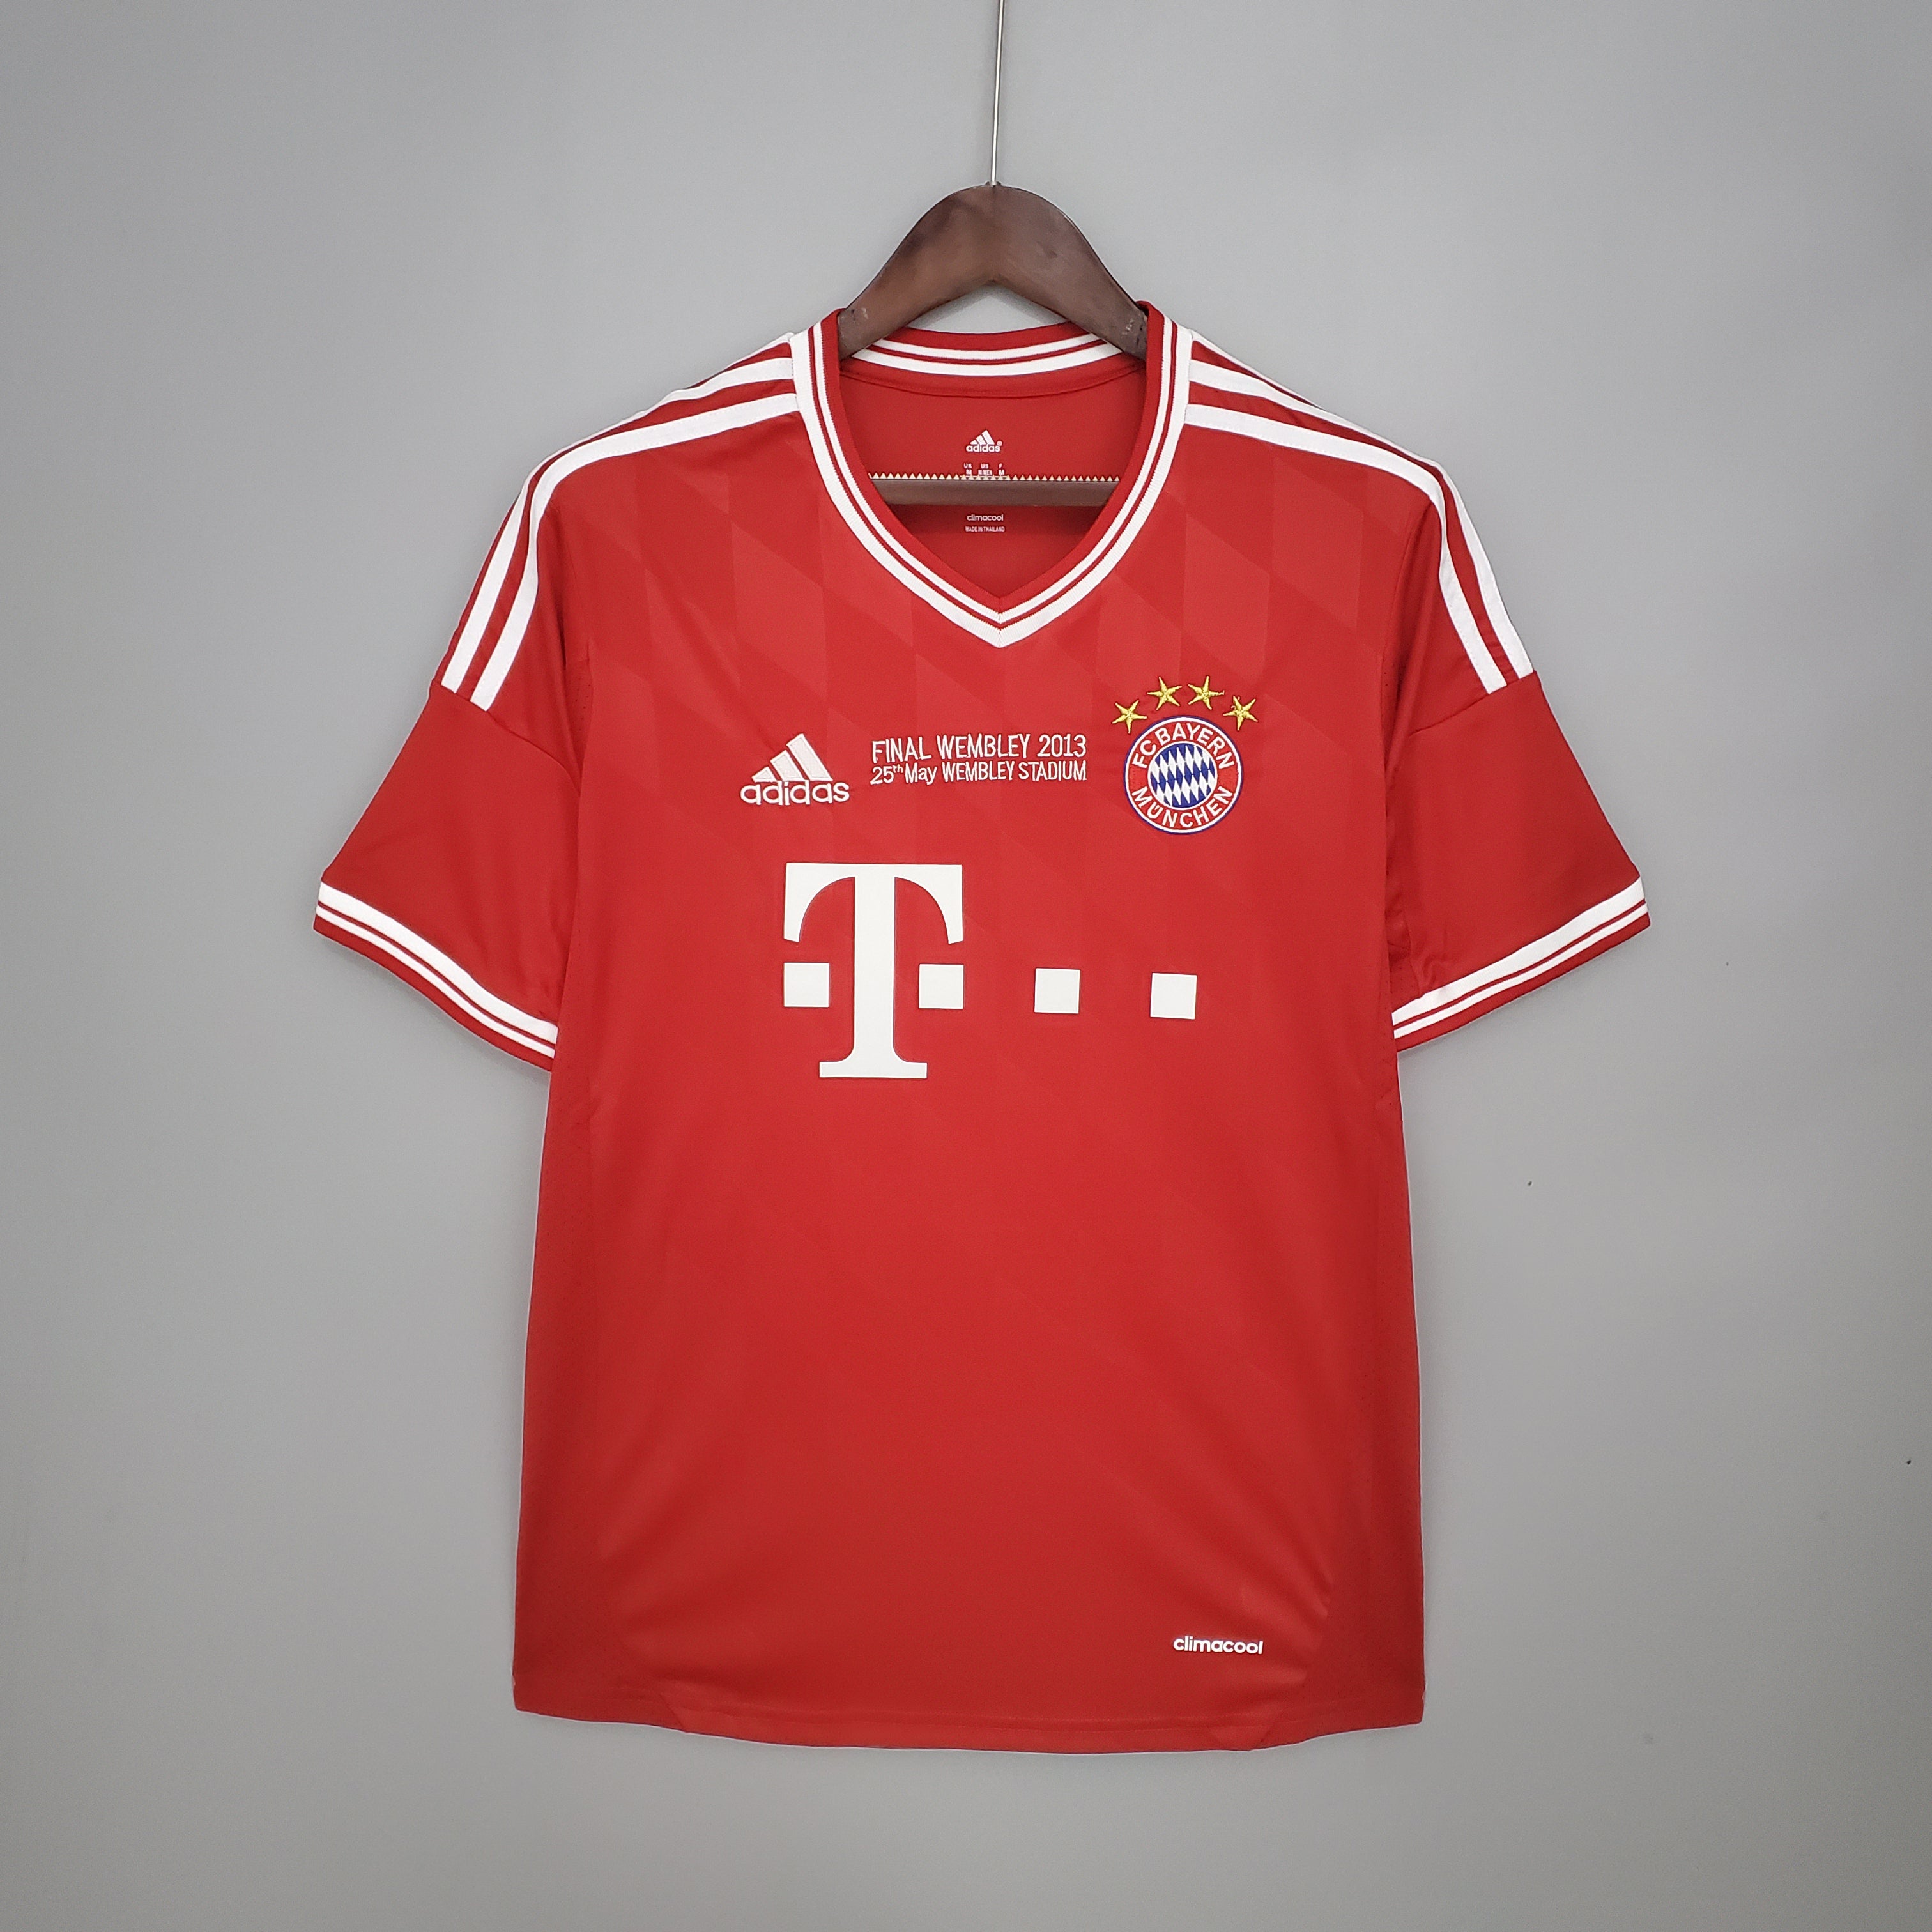 Bayern Munich 2013-14 Retro Jersey